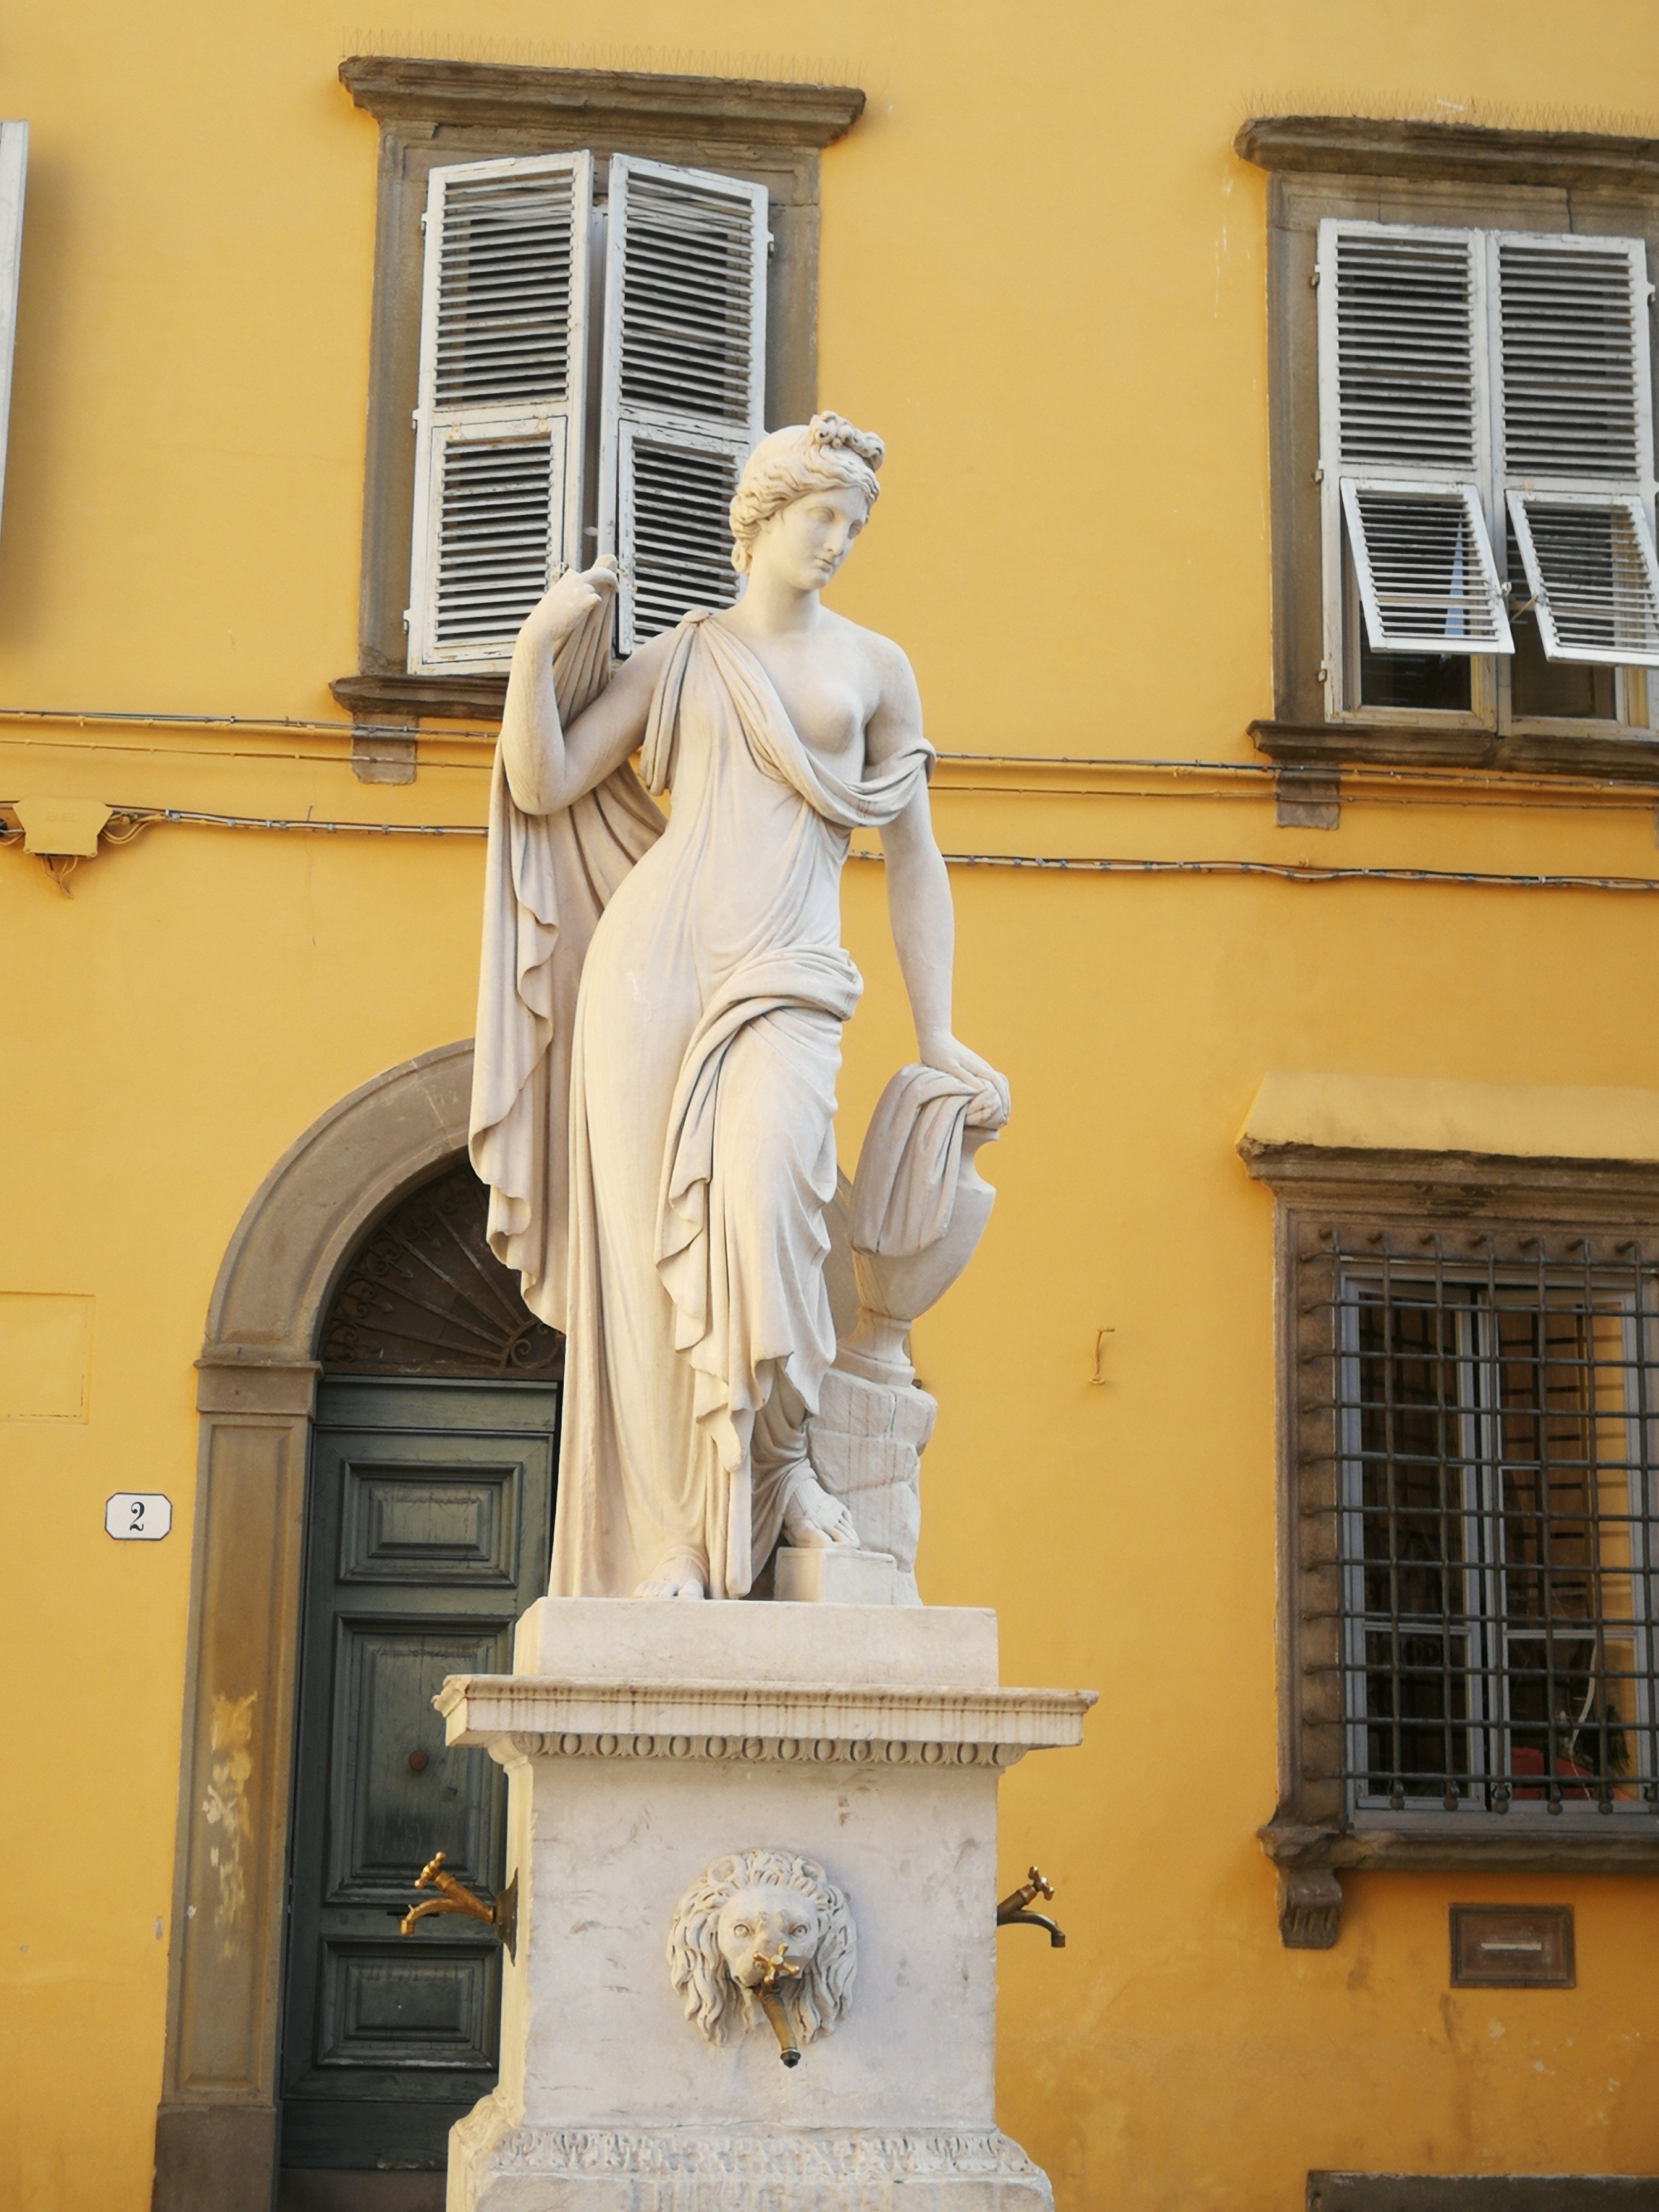 Un tour nel centro della città di Lucca con visita ai suoi splendidi palazzi signorili